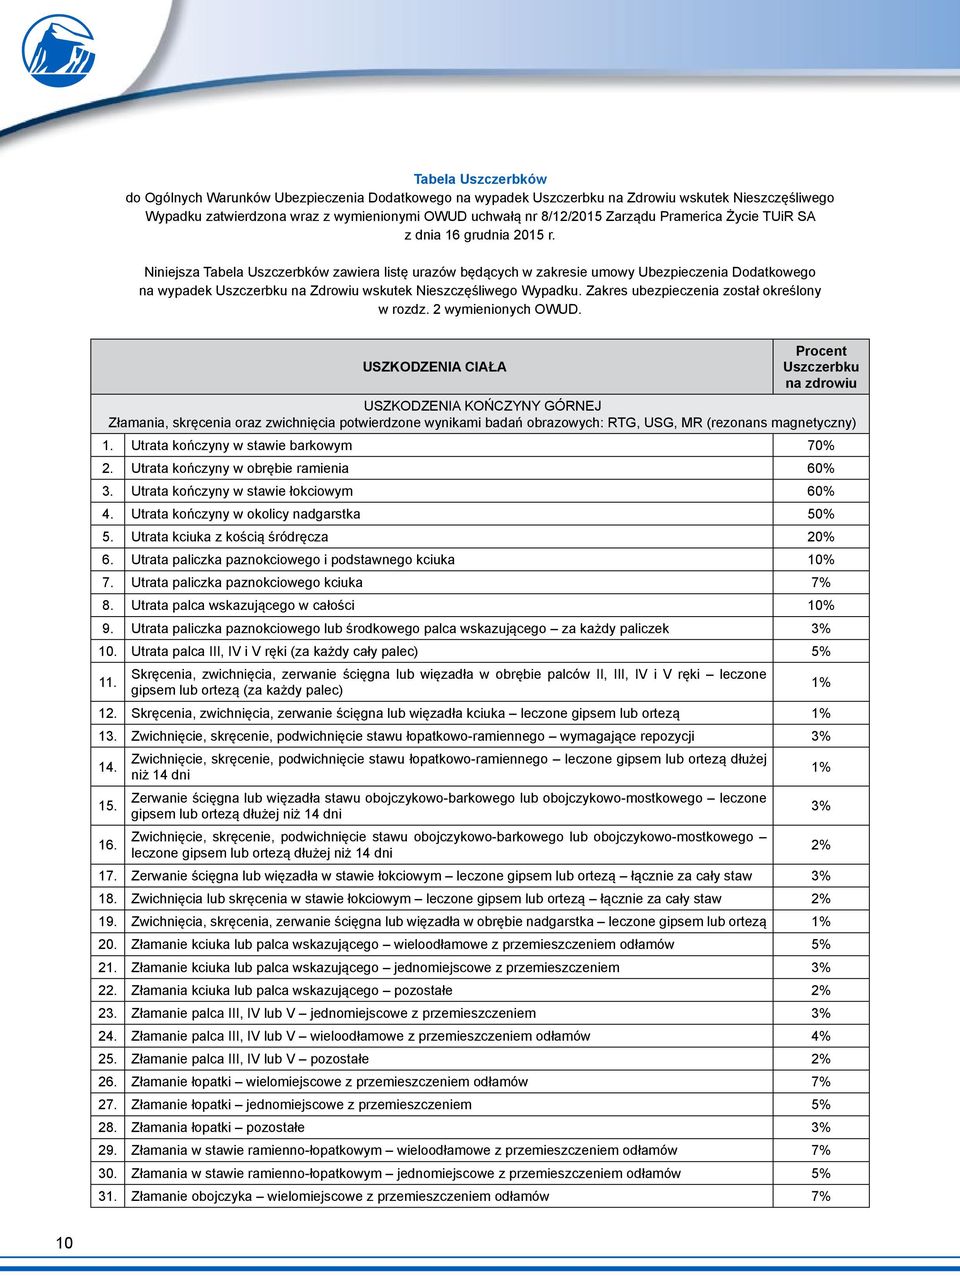 Niniejsza Tabela Uszczerbków zawiera listę urazów będących w zakresie umowy Ubezpieczenia Dodatkowego na wypadek Uszczerbku na Zdrowiu wskutek Nieszczęśliwego Wypadku.